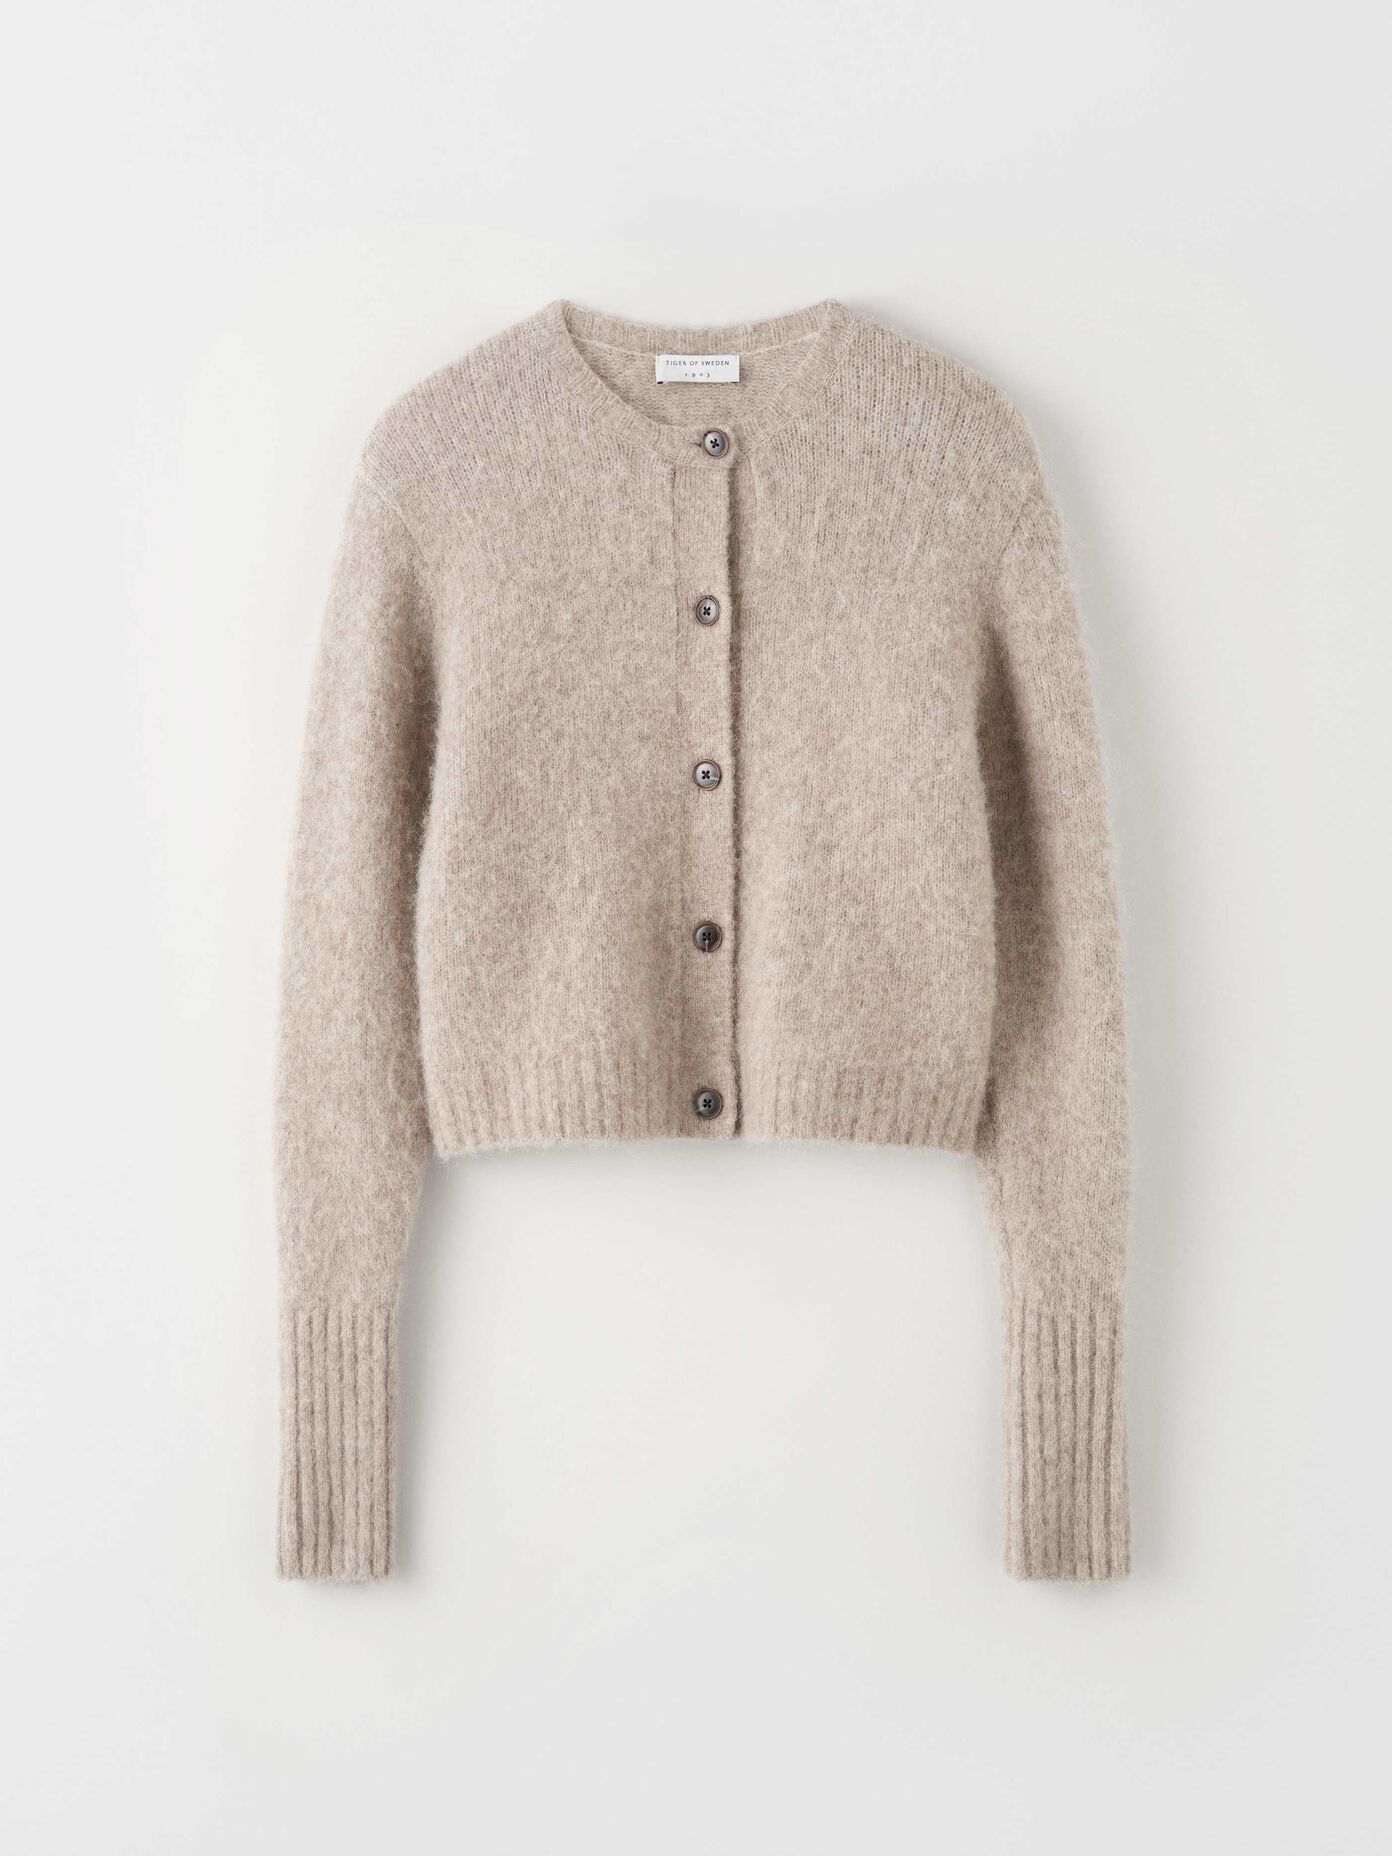 Knitwear - Buy women's designer knitwear at Tiger of Sweden